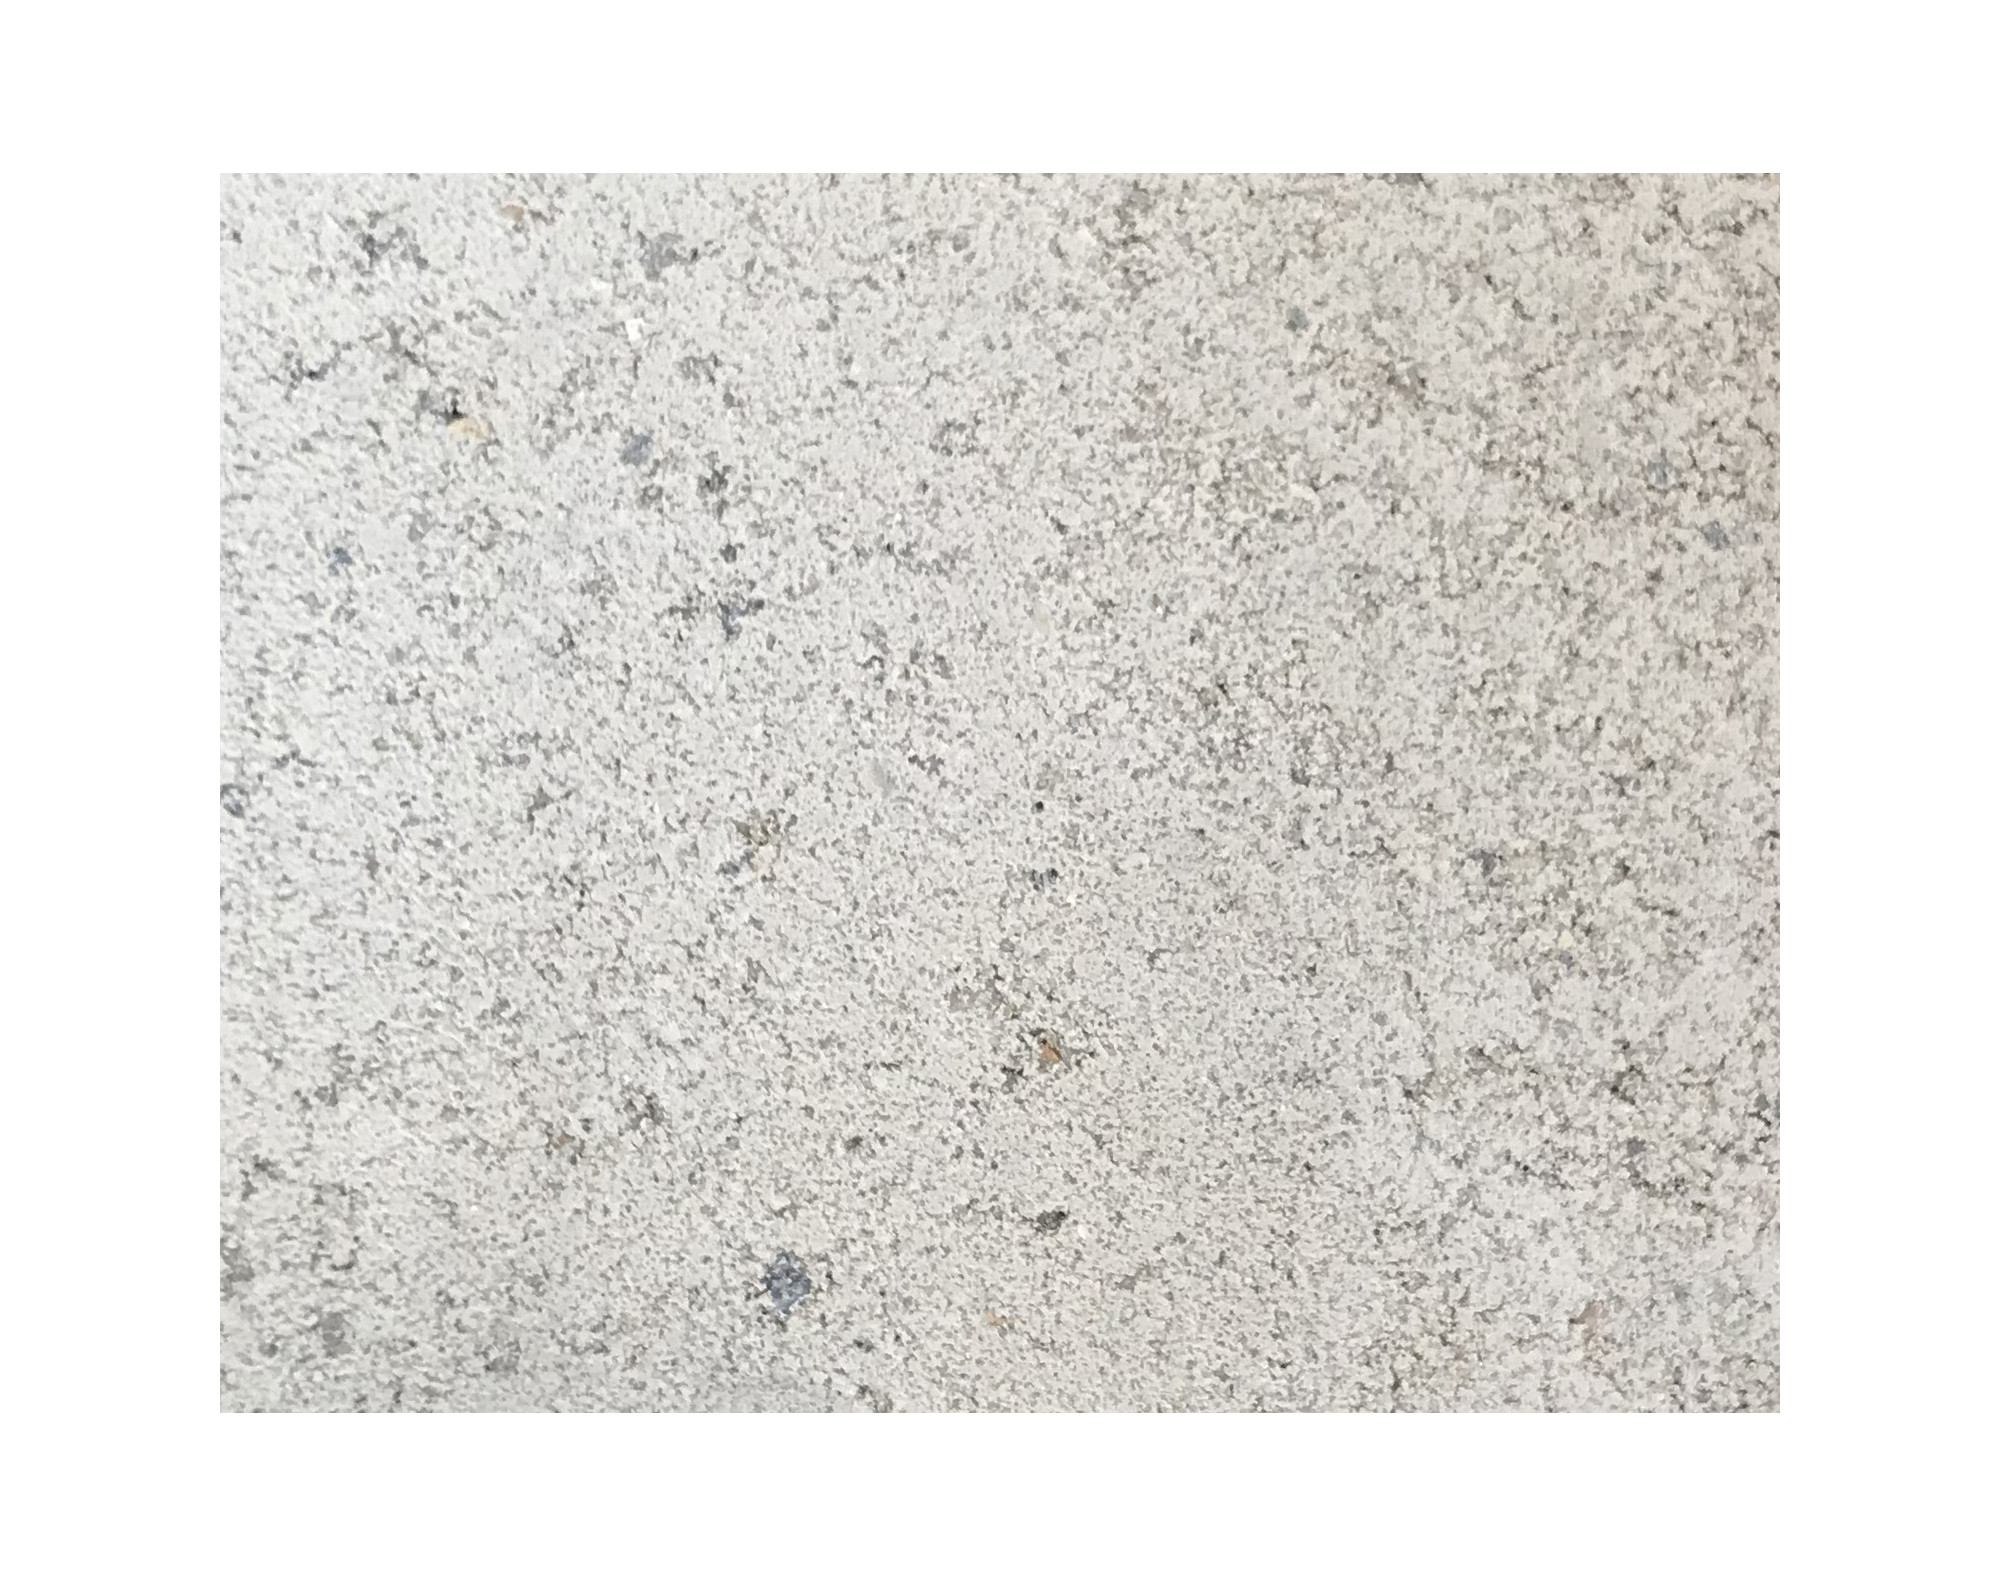 Harmo roc nevadaset, rustica-serie, ovaal d:3,00mx5,70m, gebroken wit, beton